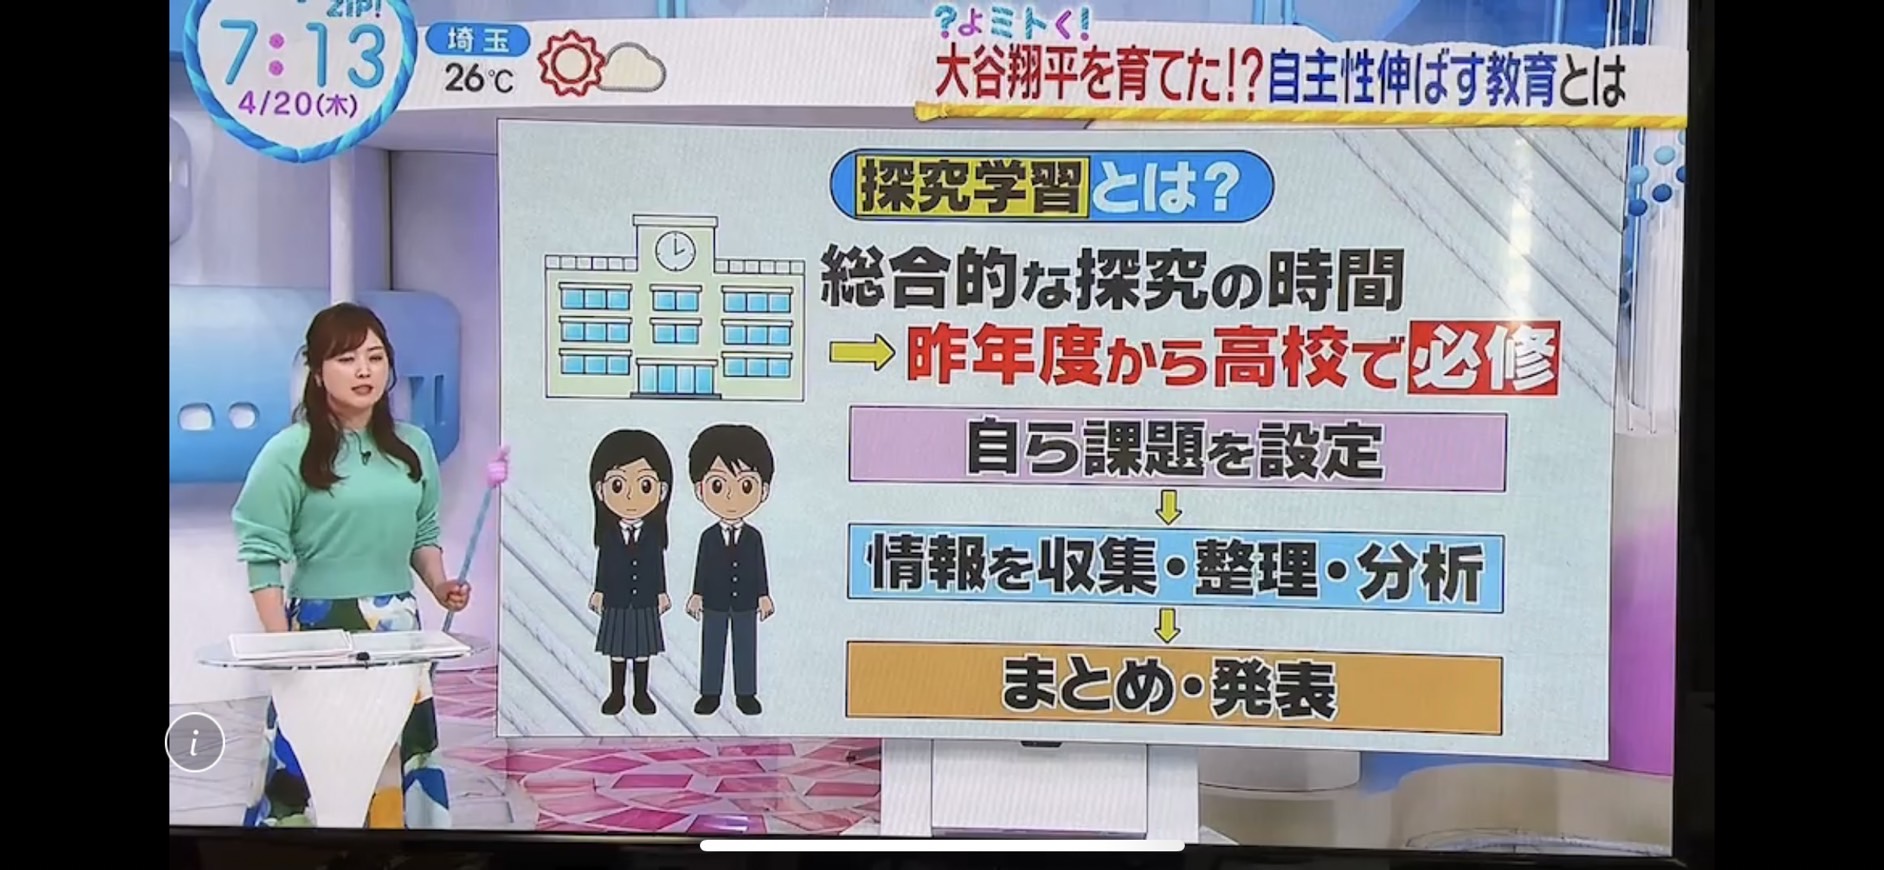 日本テレビ「ZIP!」に弊社サポートの探究学習が紹介されました - Far 